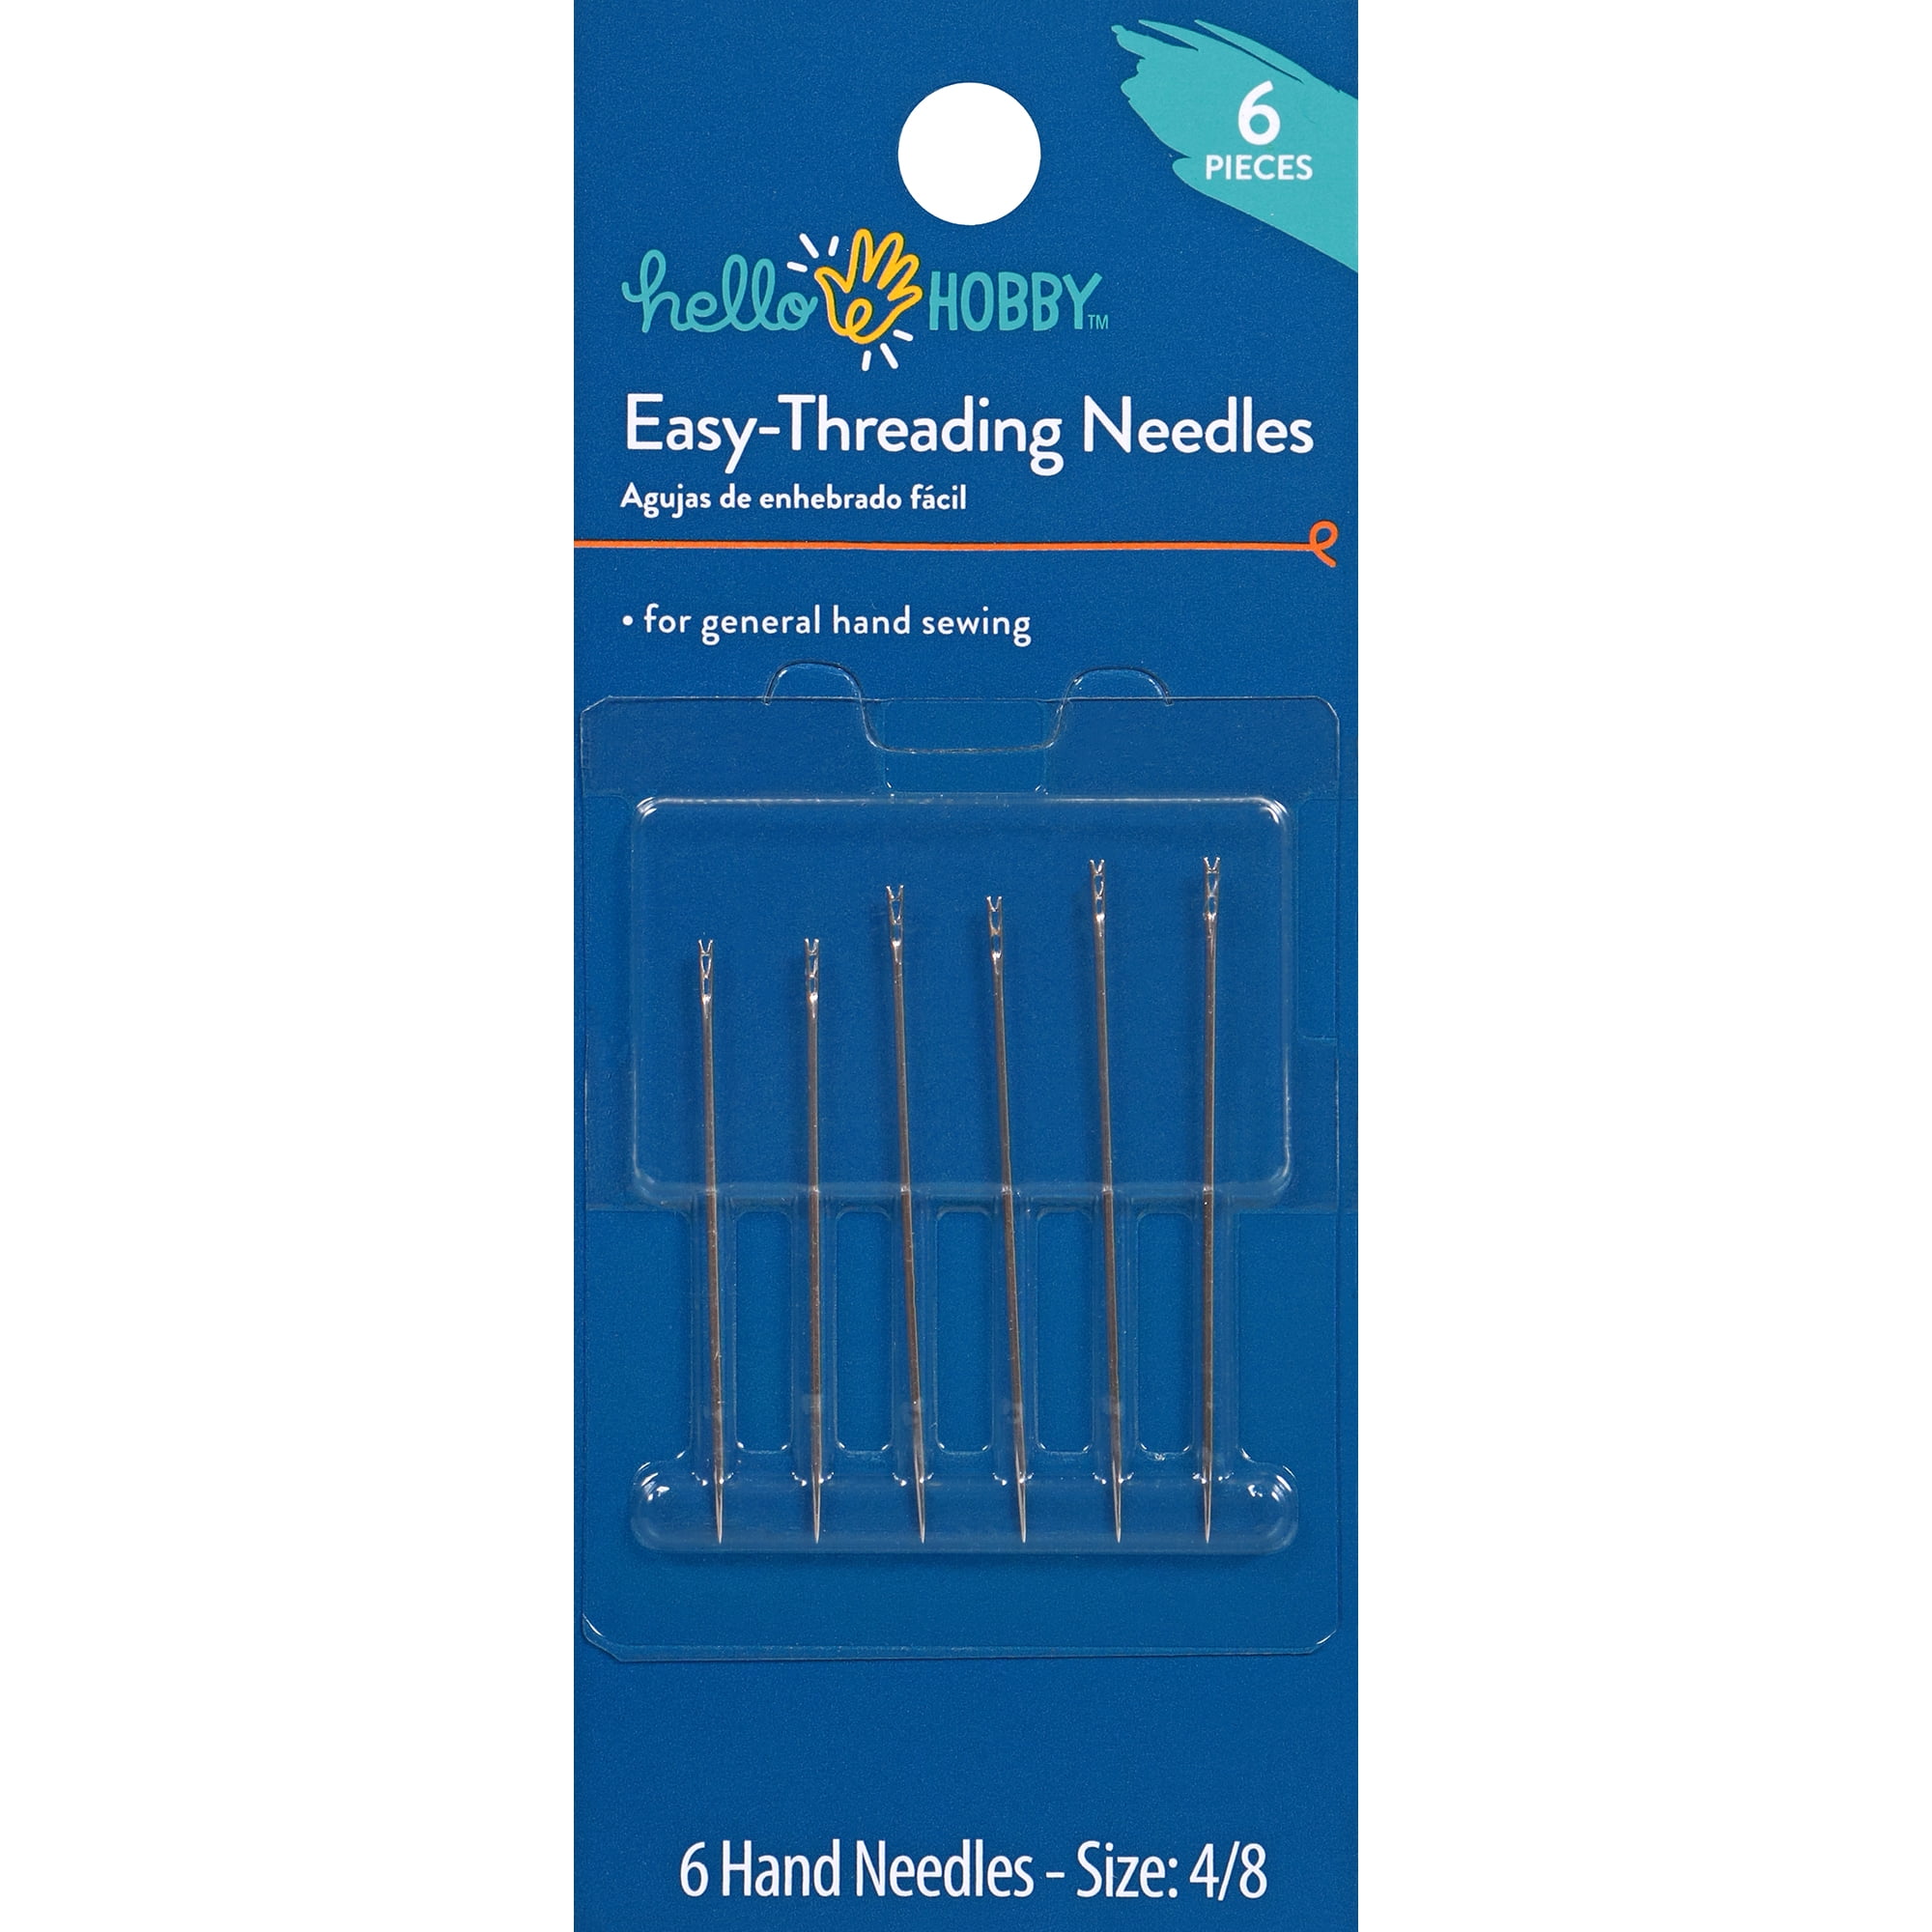 Dritz 6 Easy Threading Hand Needles - Size 4/8